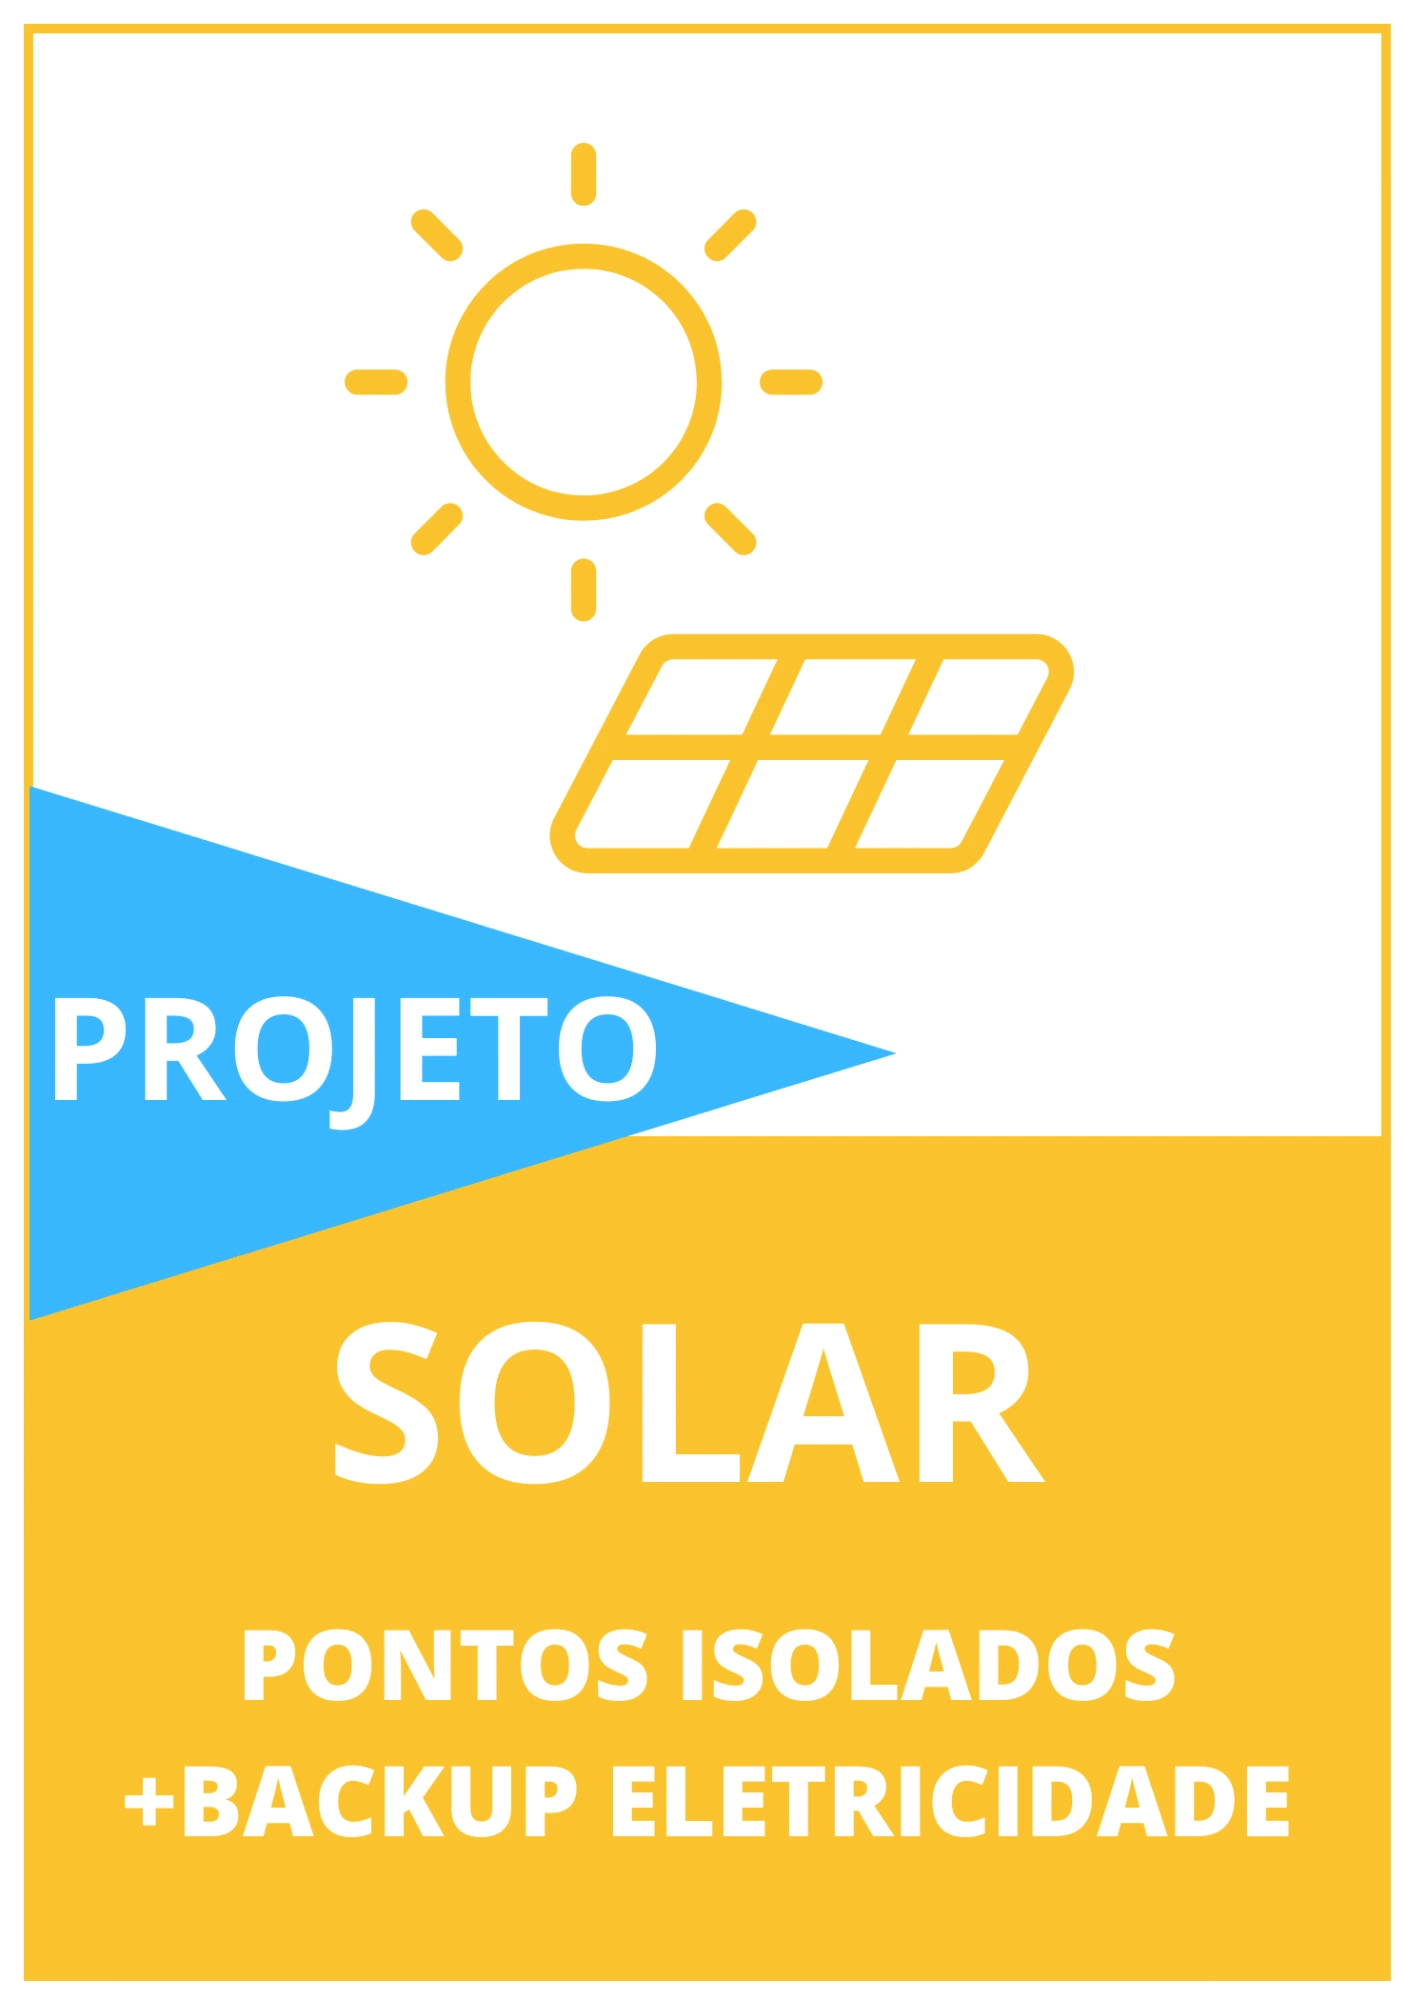 Projeto: indicação de energia solar